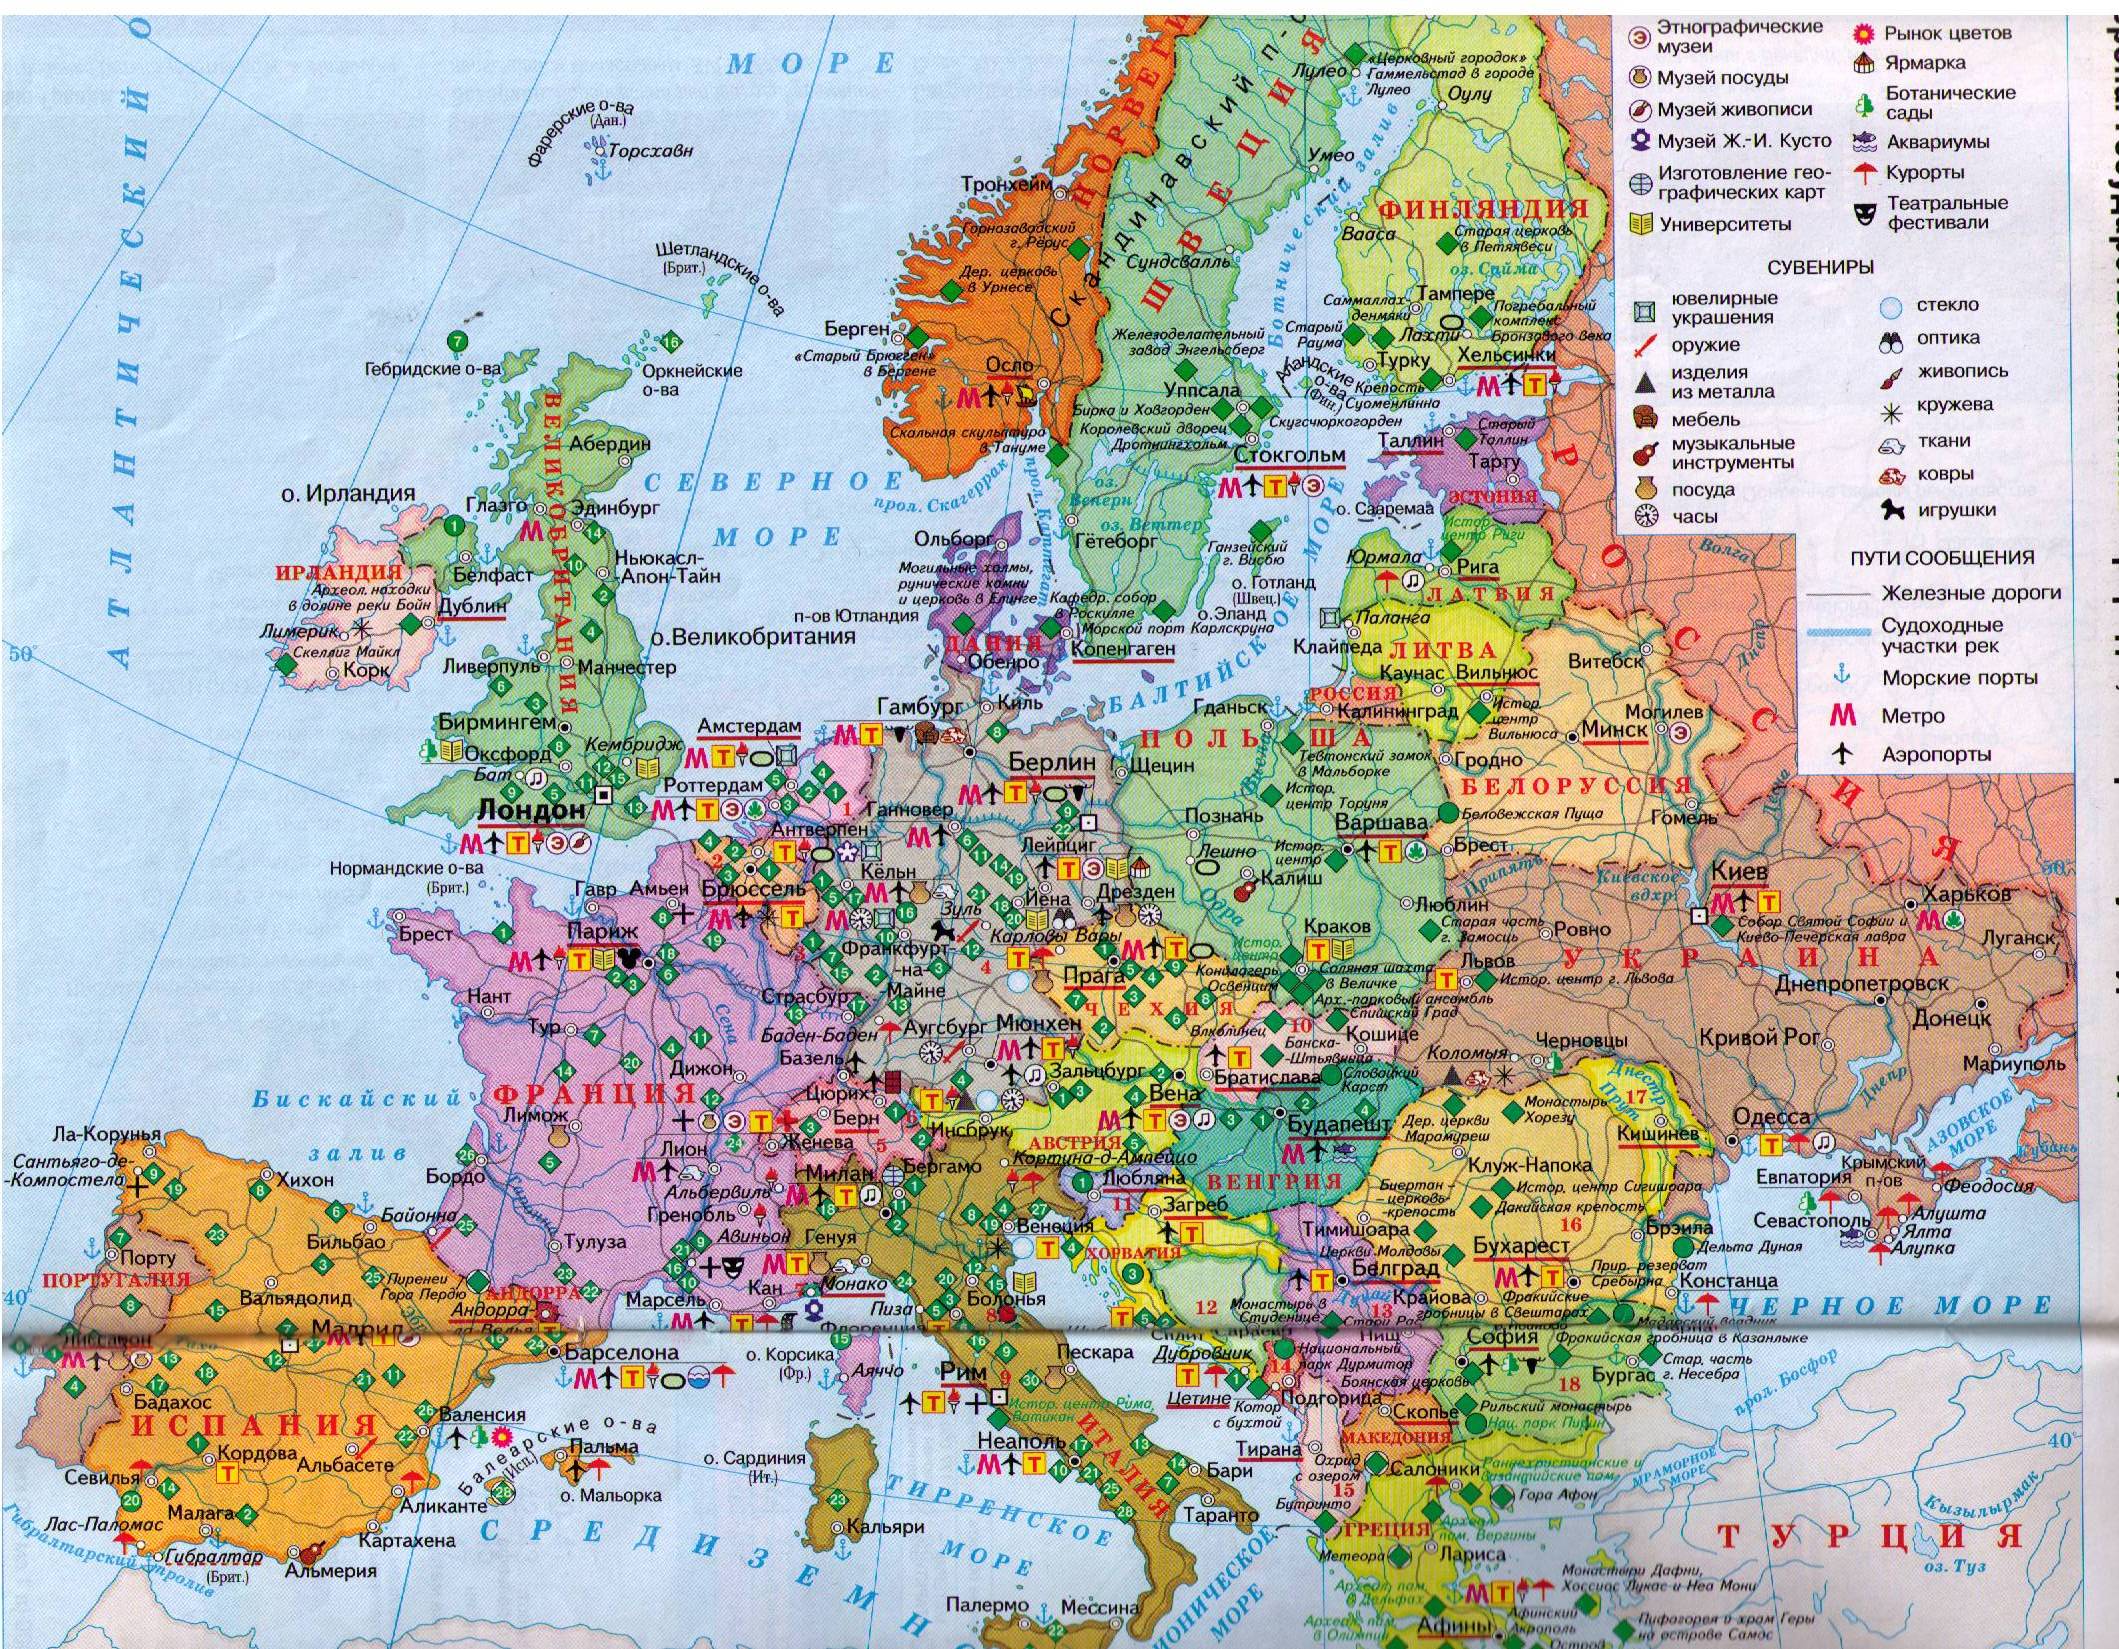 Зарубежная европа находится. Карта Европы со странами. Политическая карта Европы крупно. Политическая карта зарубежной Европы. Политическая карта Западной Европы со странами.